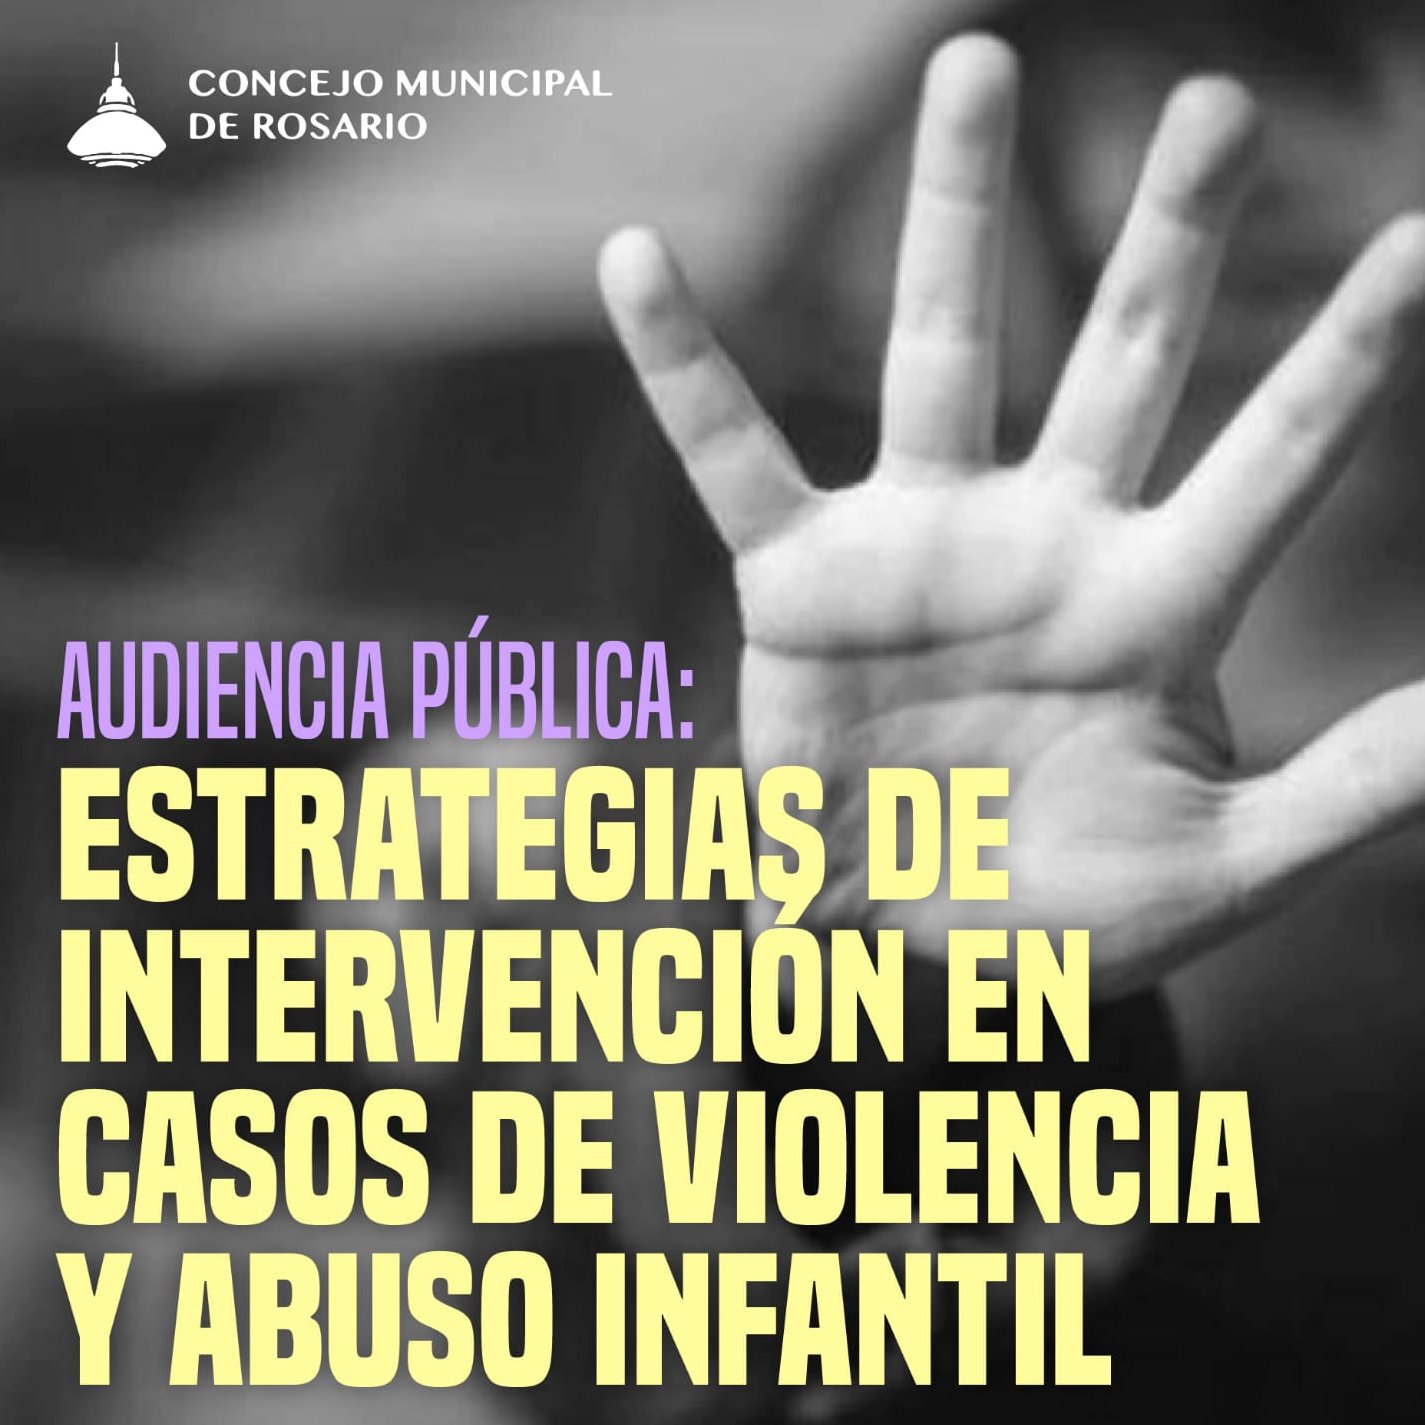 El Concejo de Rosario hizo una audiencia pública de estrategias de intervención en casos de abuso infantil